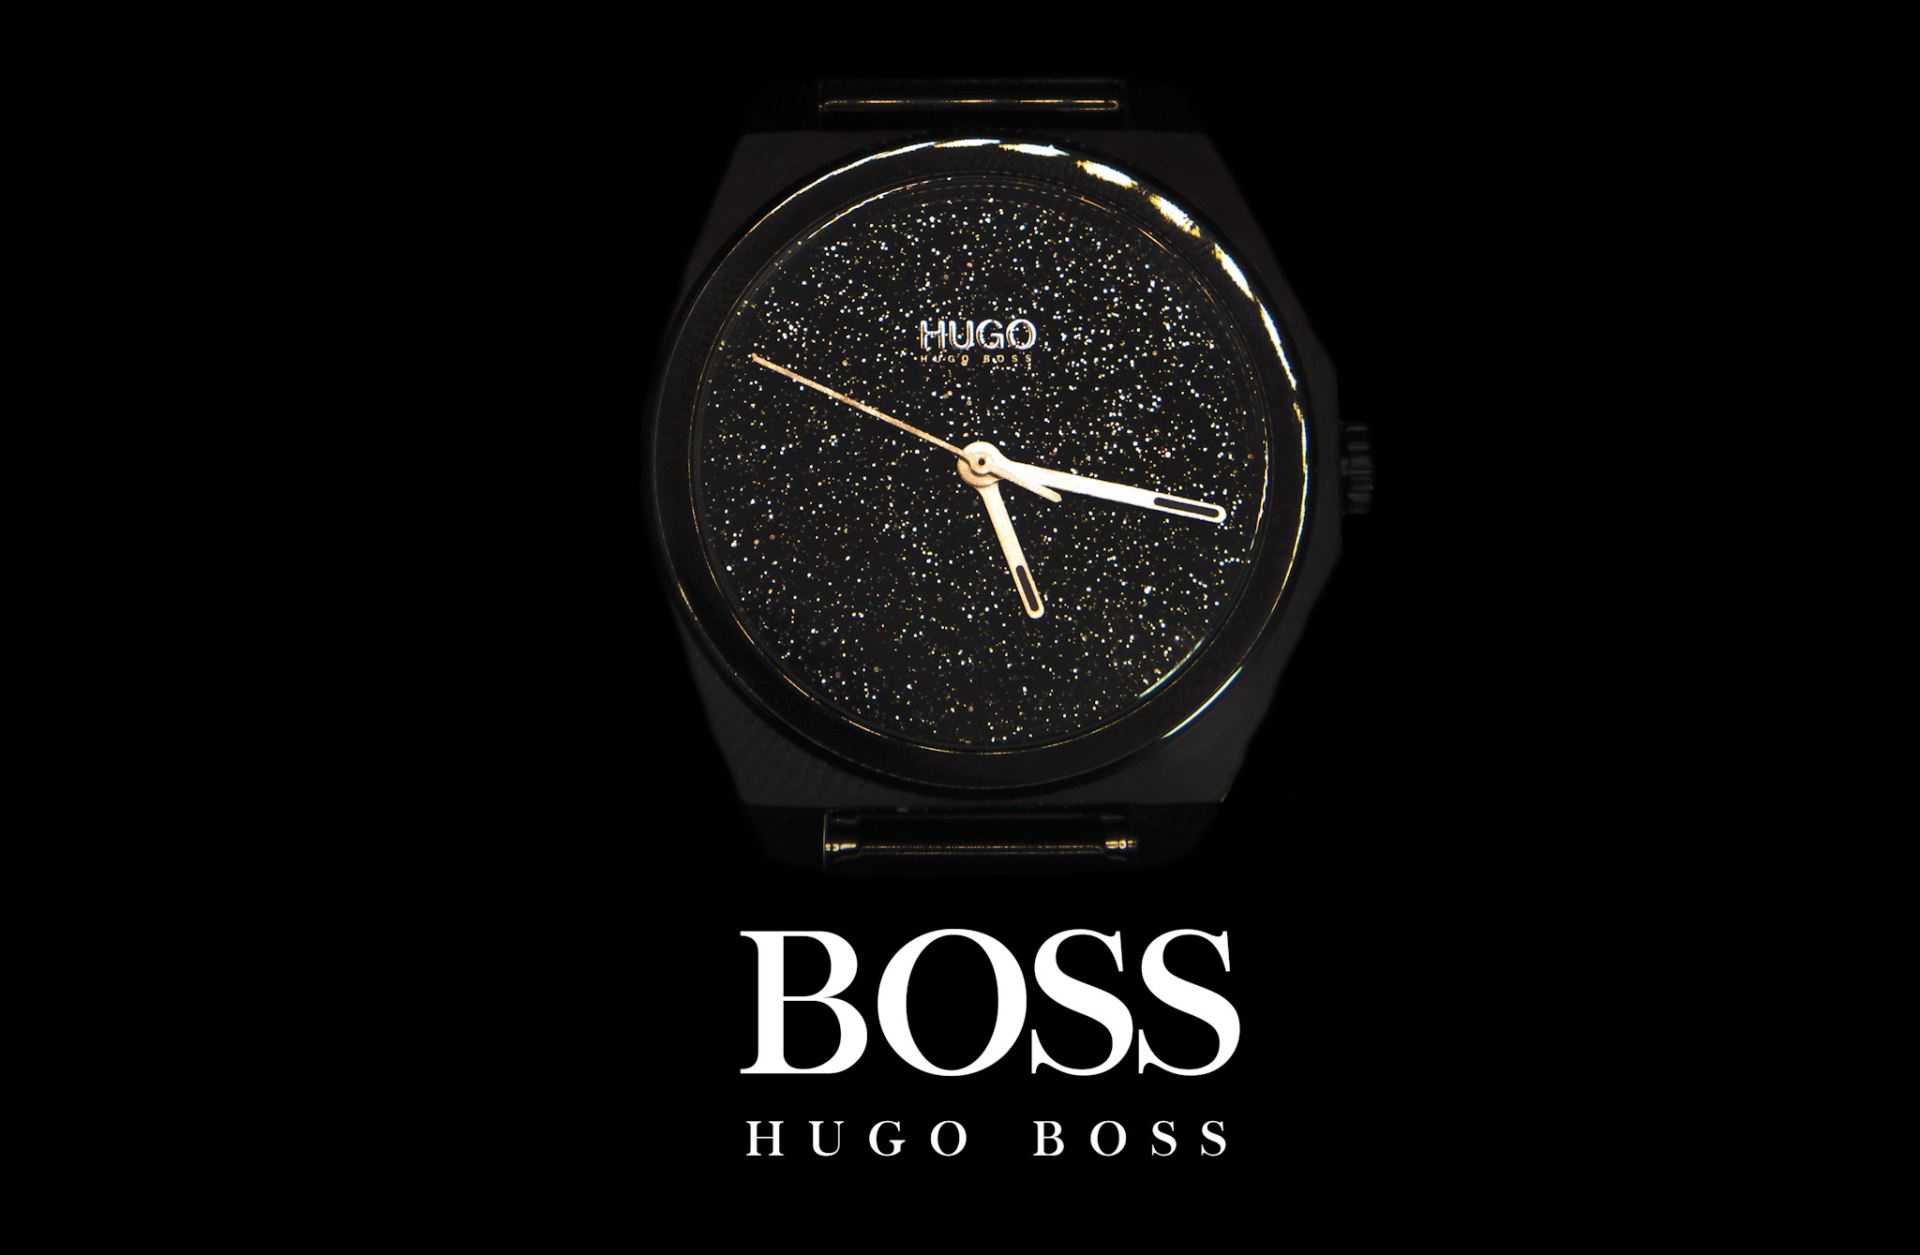 Hugo Boss watch Advert.